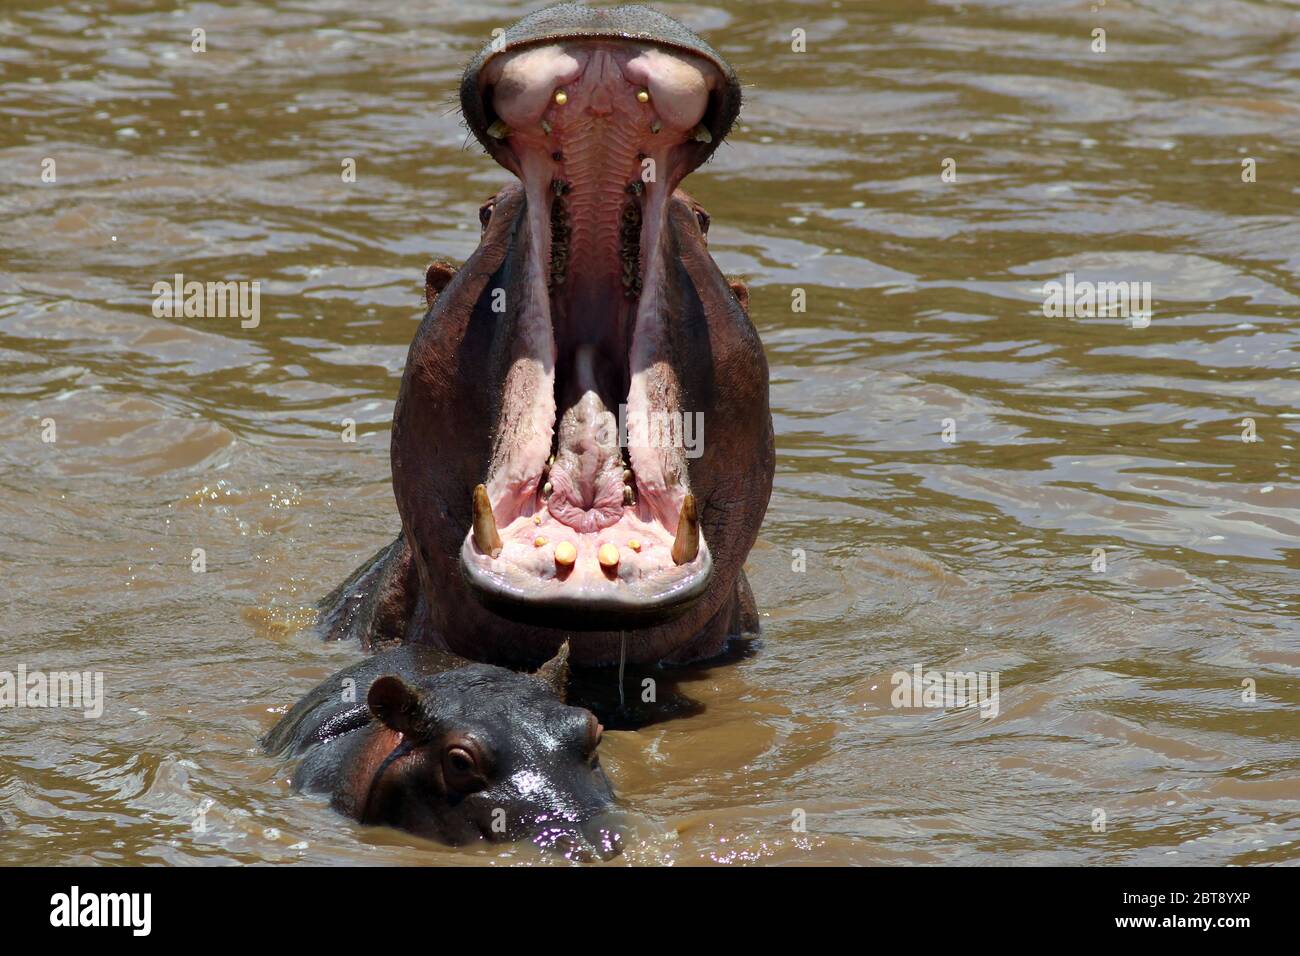 Un hippopotame à la bouche large, un jeune animal en lecture, dans l'eau brune de la rivière Mara Banque D'Images